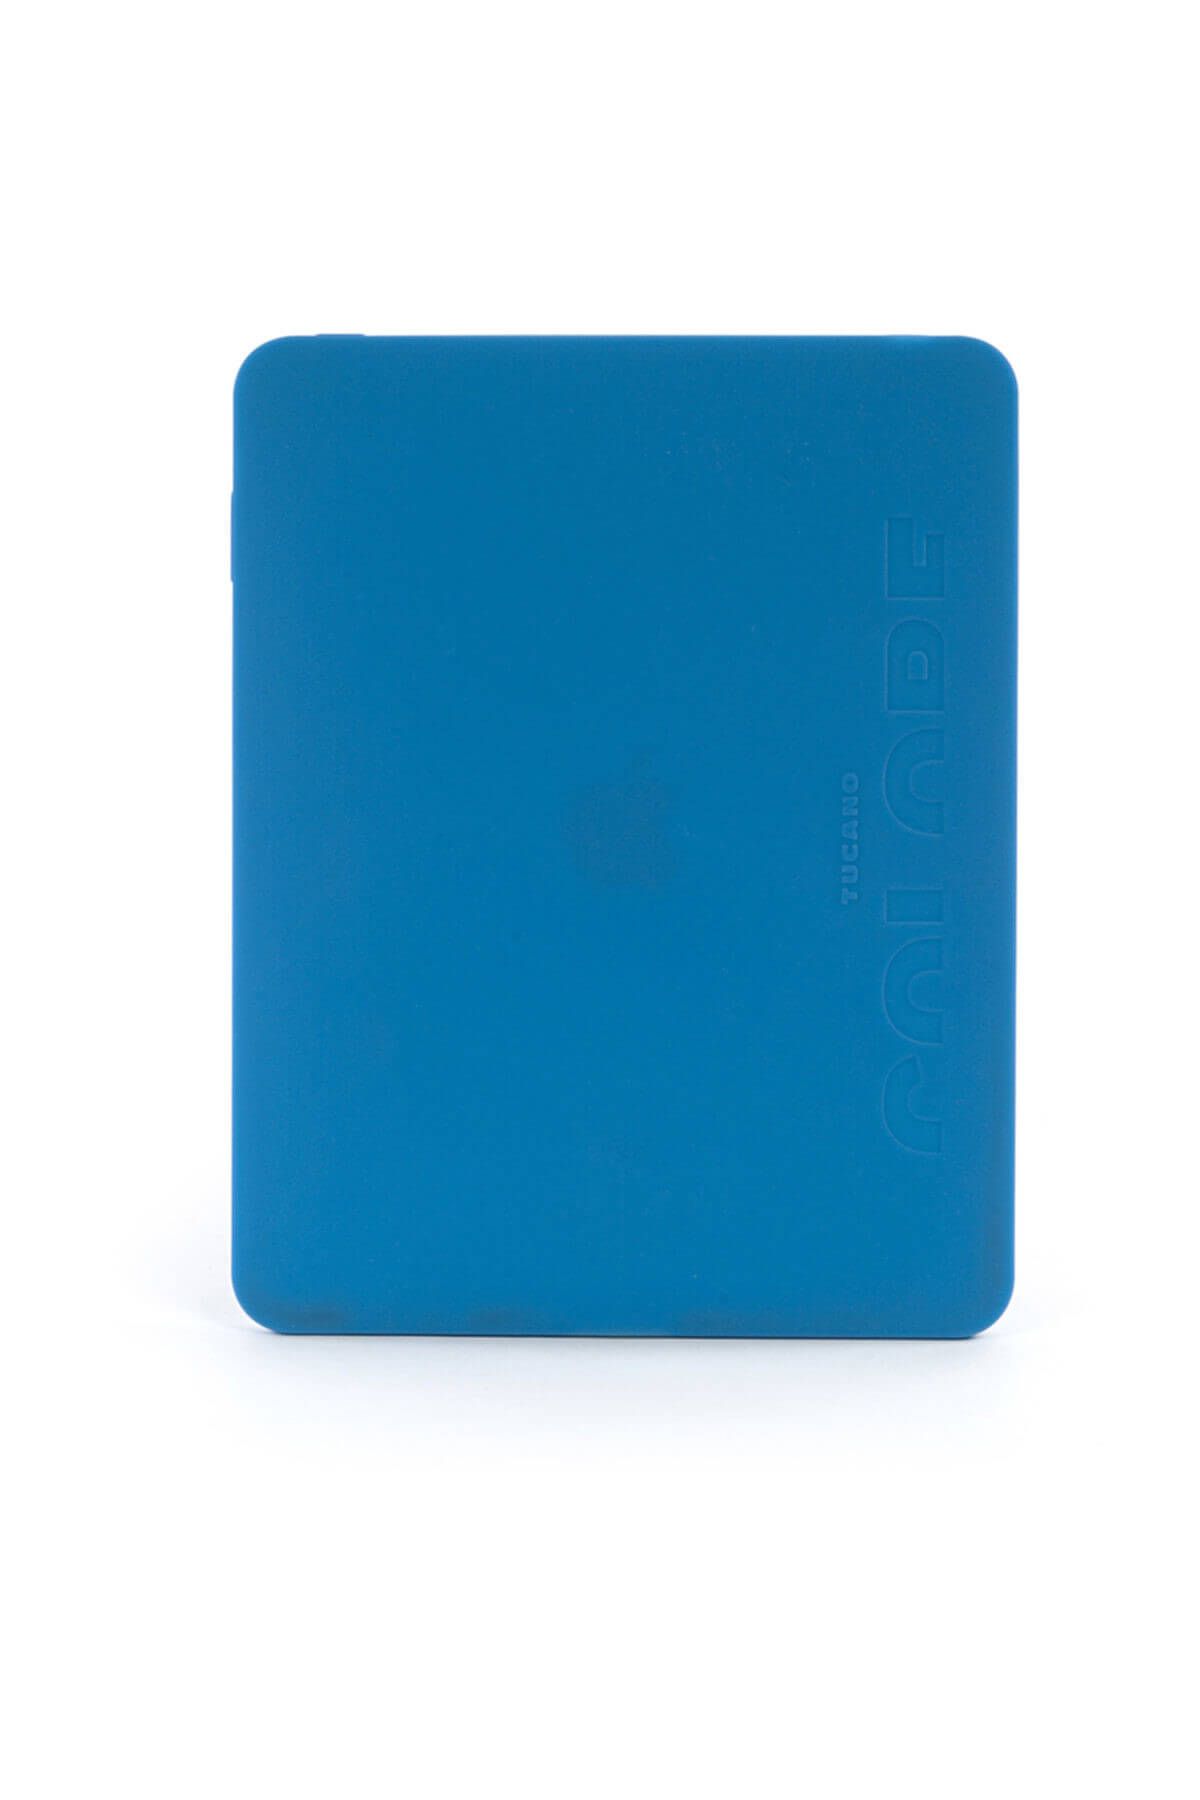 Tucano IPDCS-B Colore iPad 1 ile Uyumlu Silikon Tablet Kılıfı Mavi